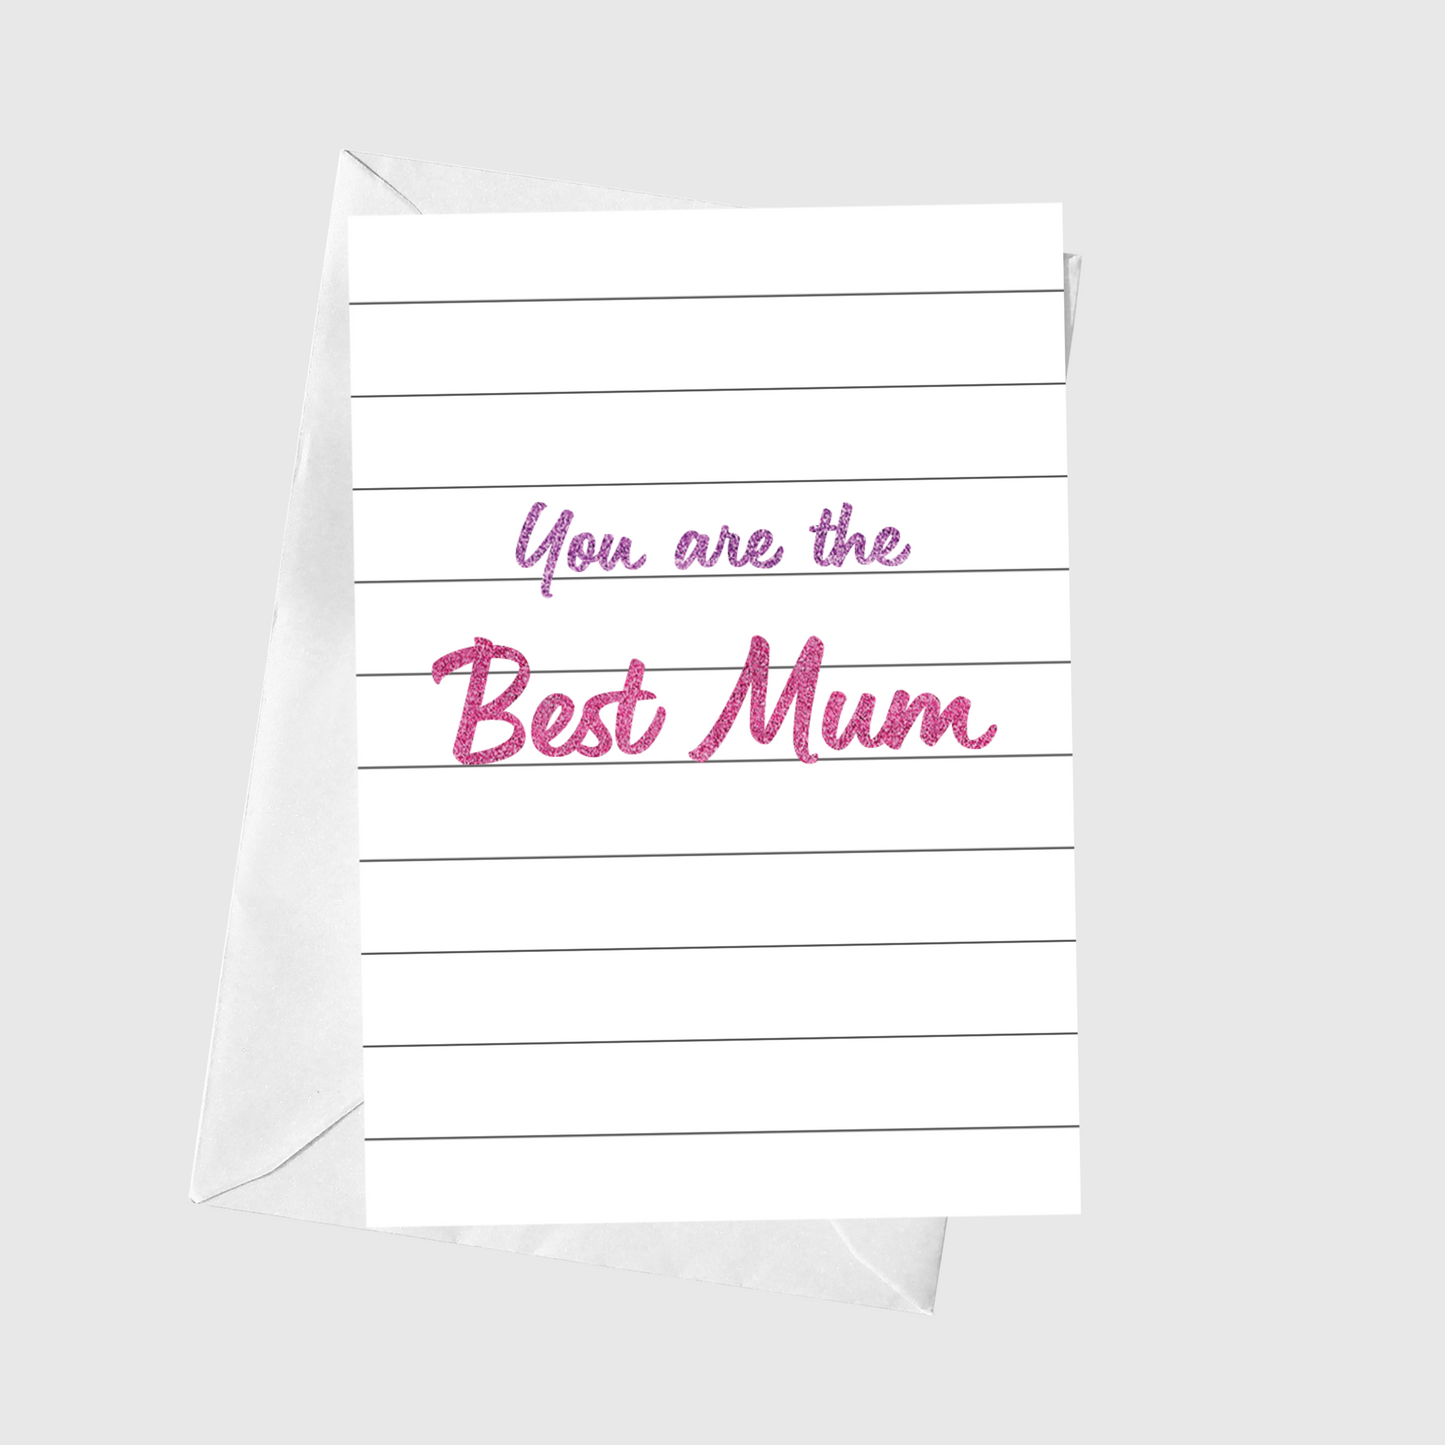 The Best Mum